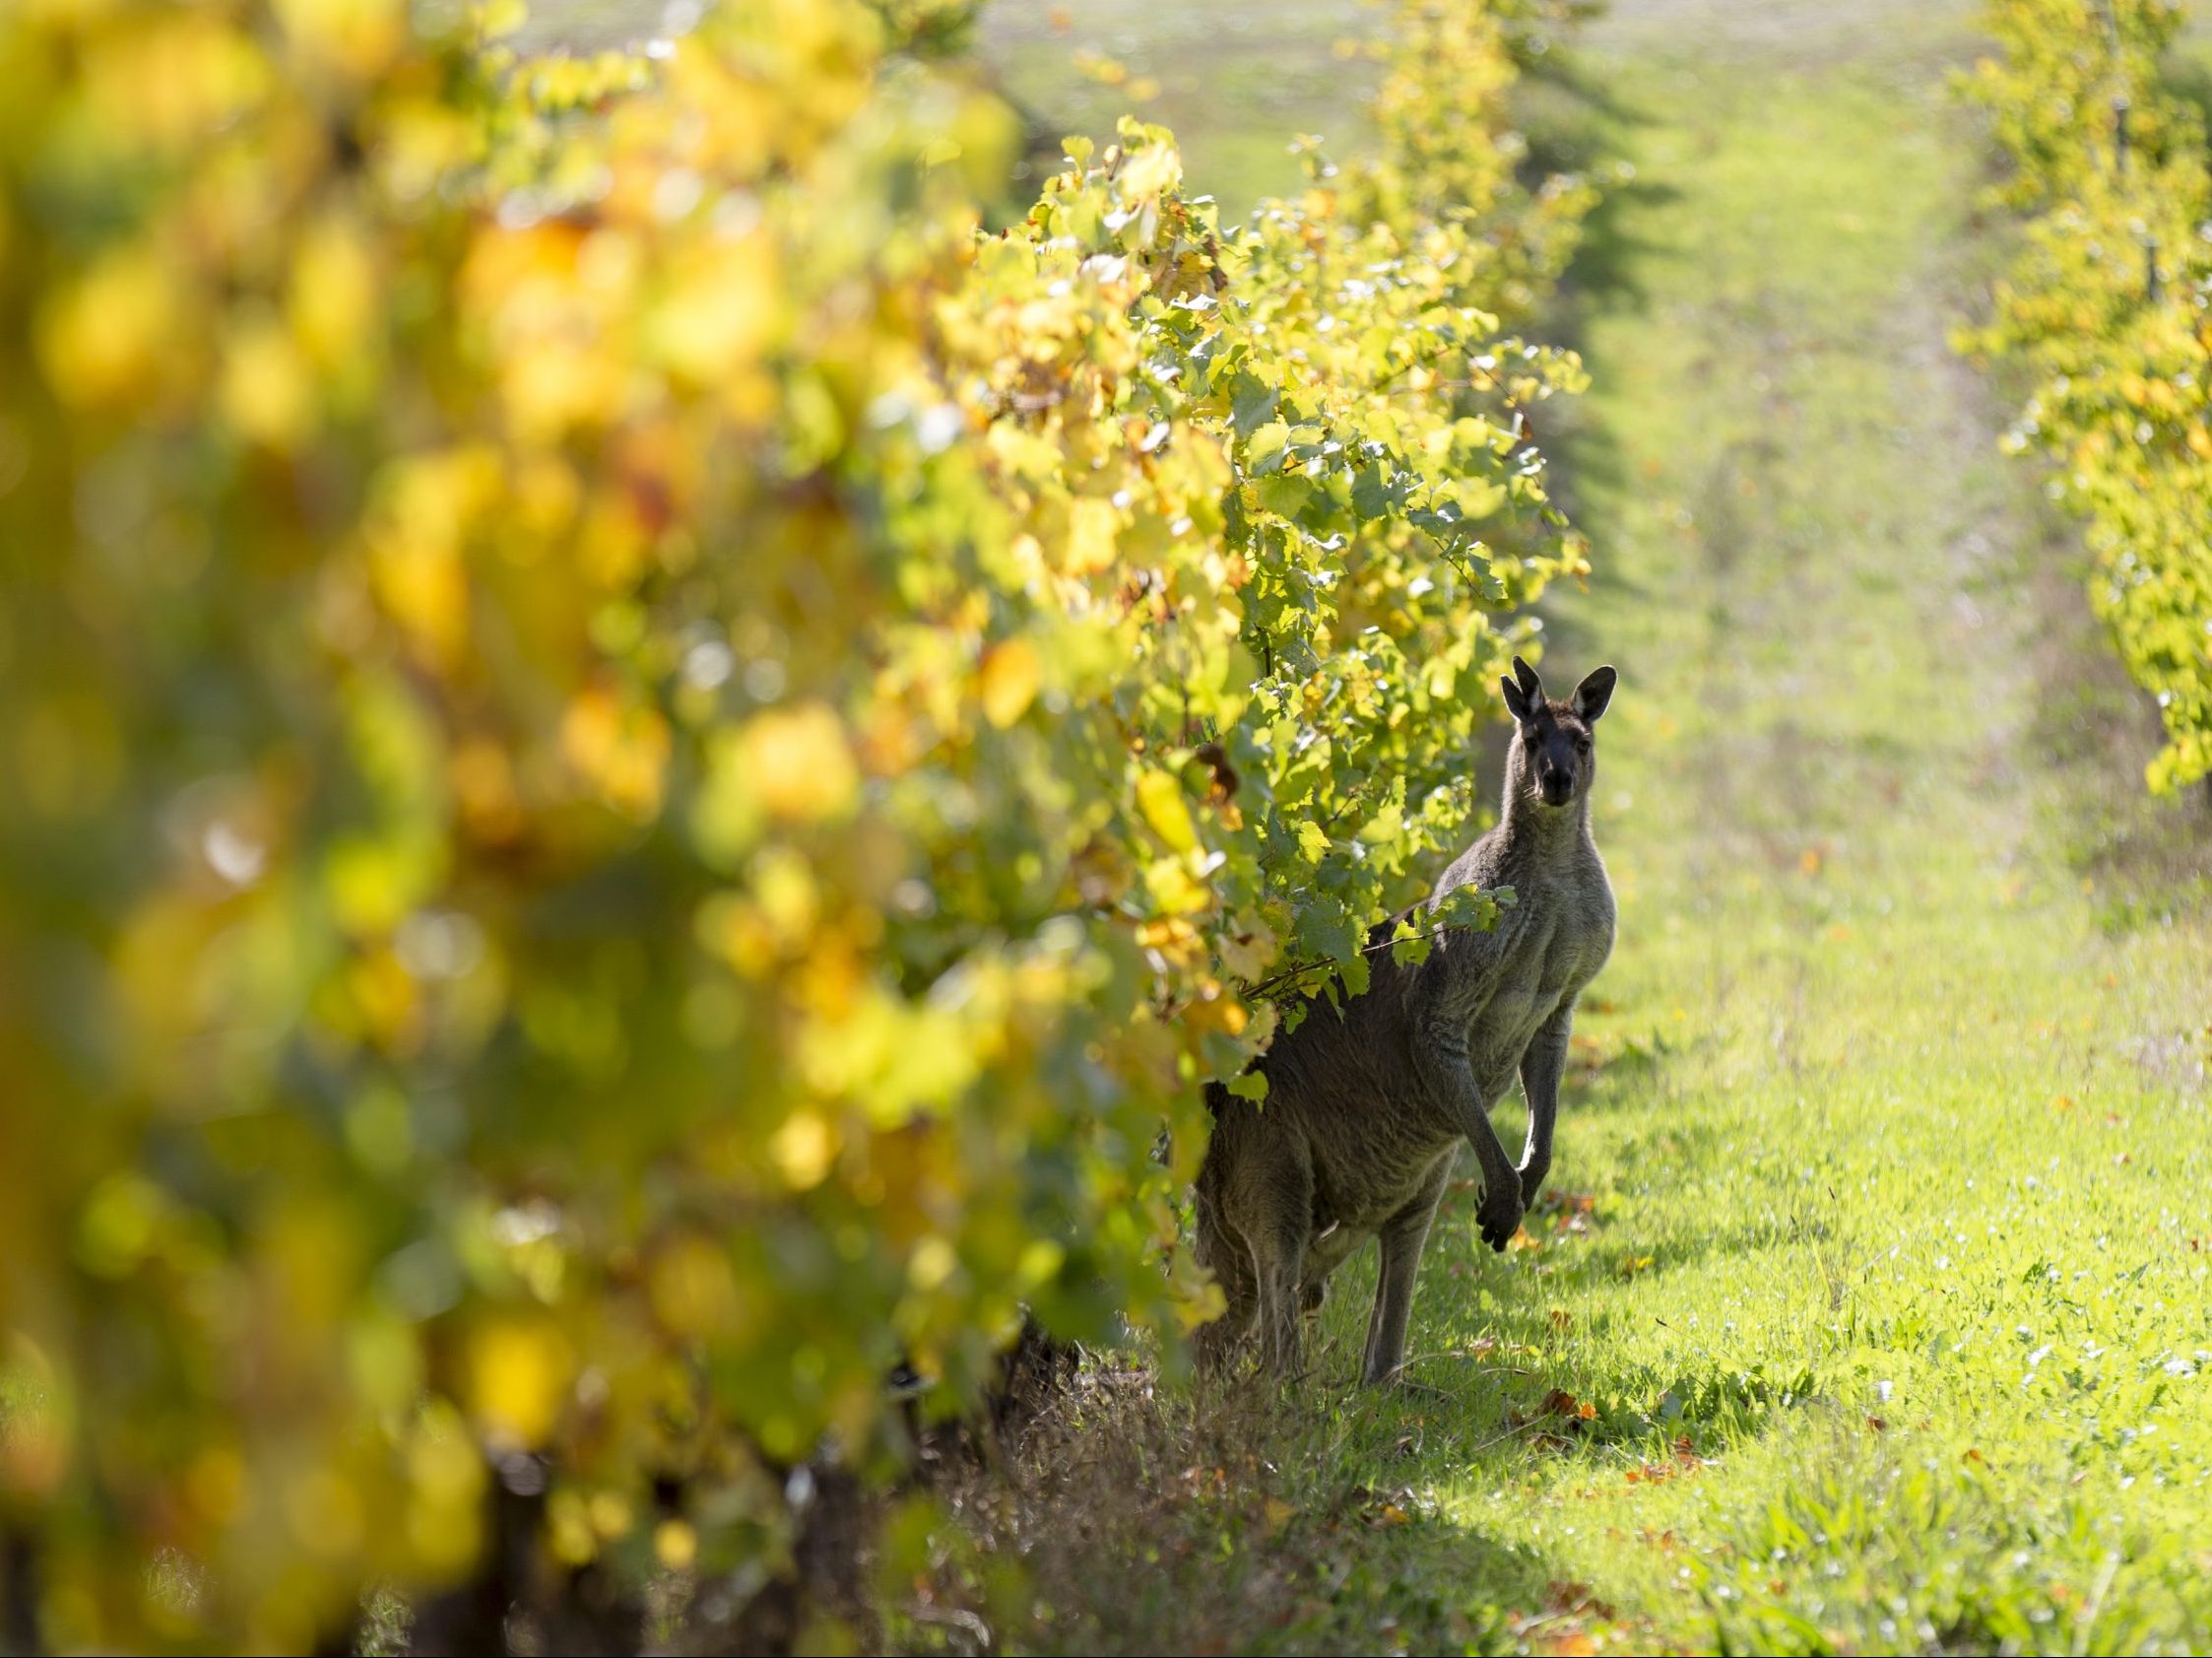 Kangaroo in vineyard